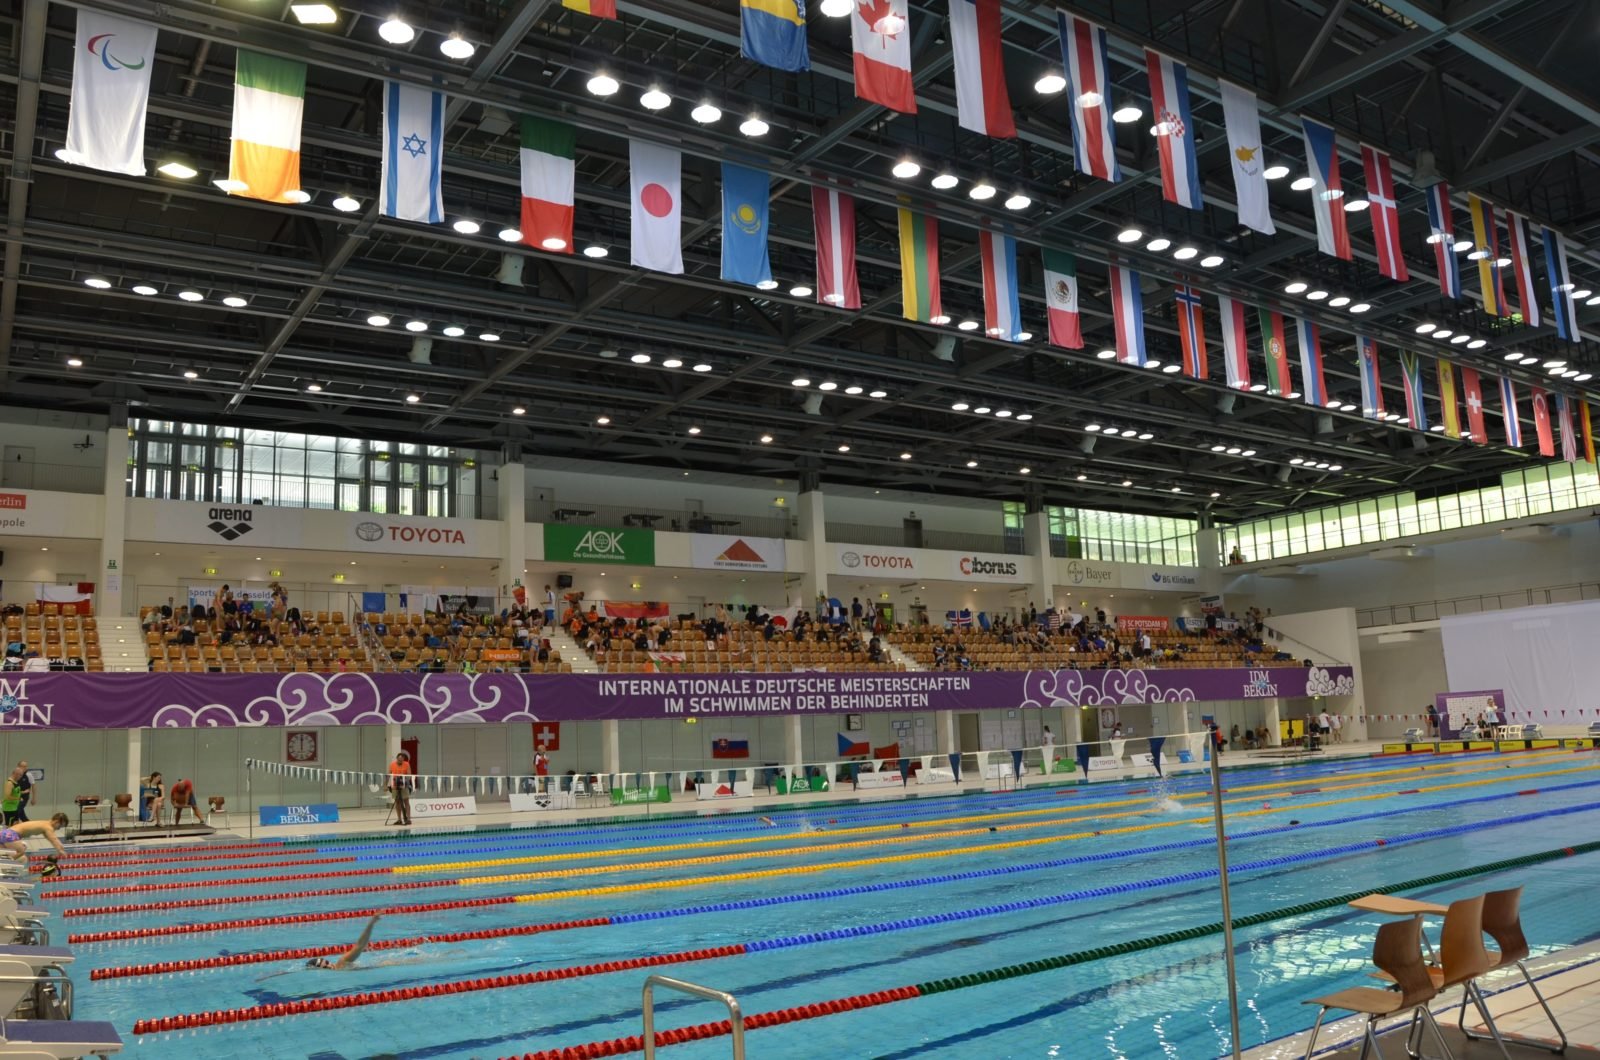 Blick in die Schwimmhalle: Vorne das Becken in dem gerade ein Wettkampf stattfindet, im Hintergrund die Ränge mit Zuschauern und darüber die Flaggen aller teilnehmenden Nationen.